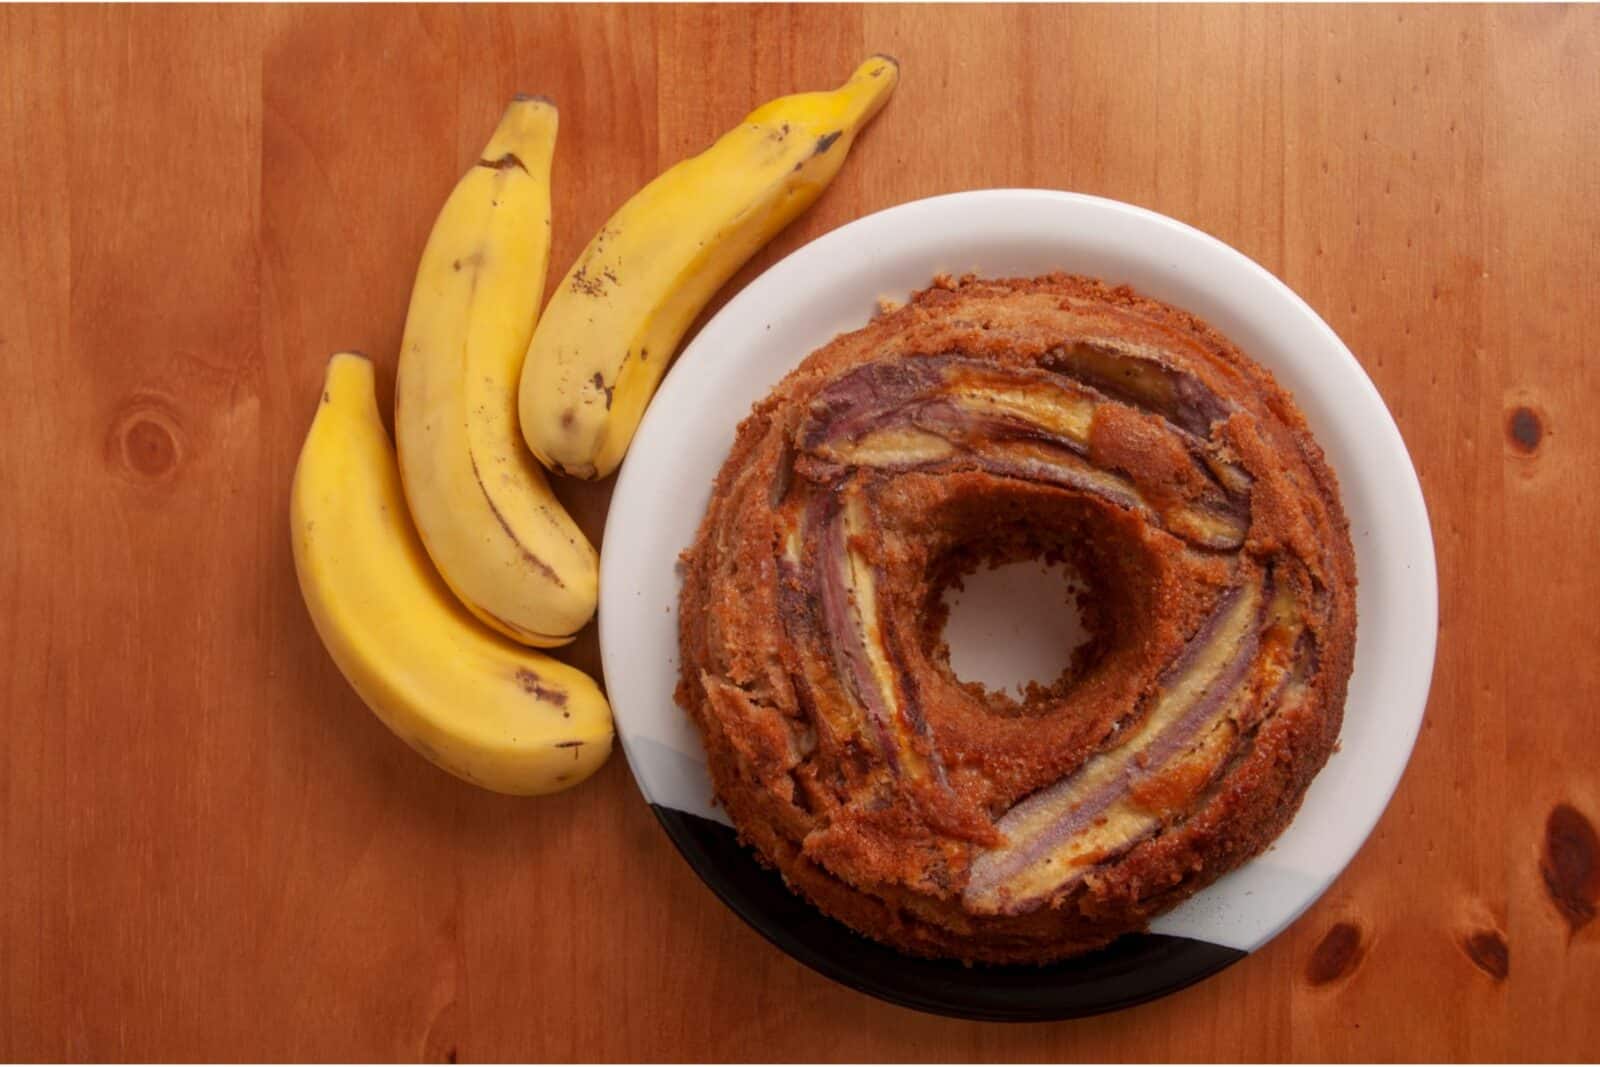 Bolo de banana sem açúcar: uma receita deliciosa e saudável